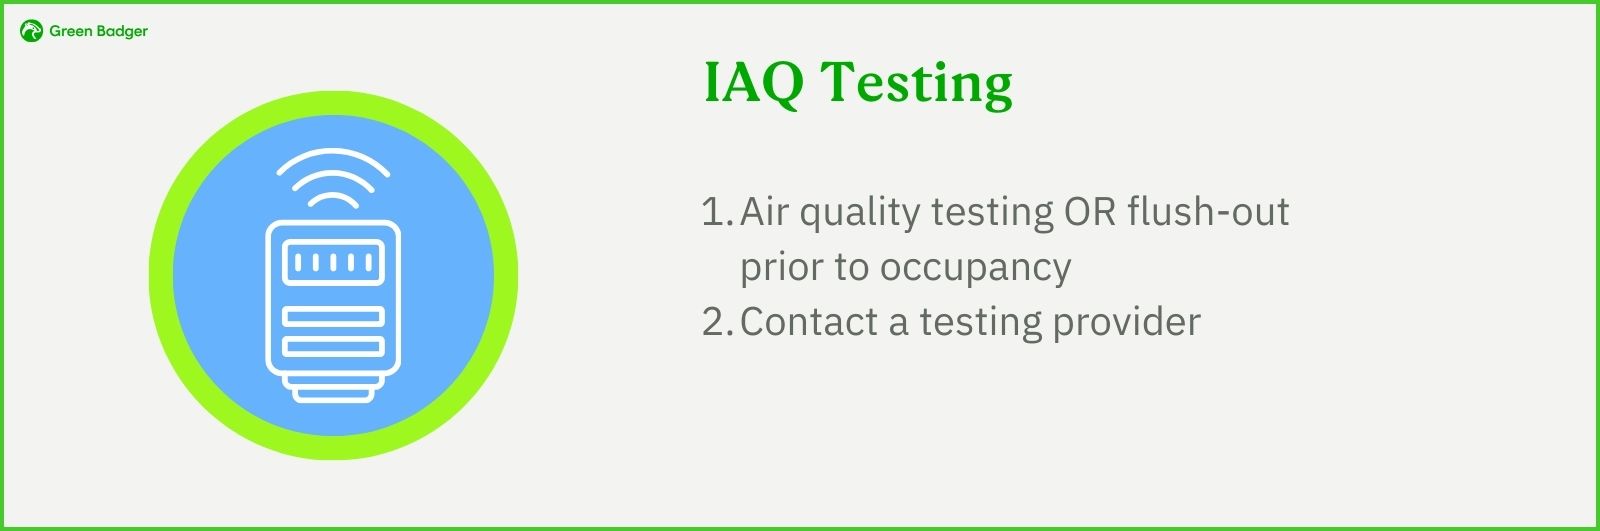 IAQ Testing